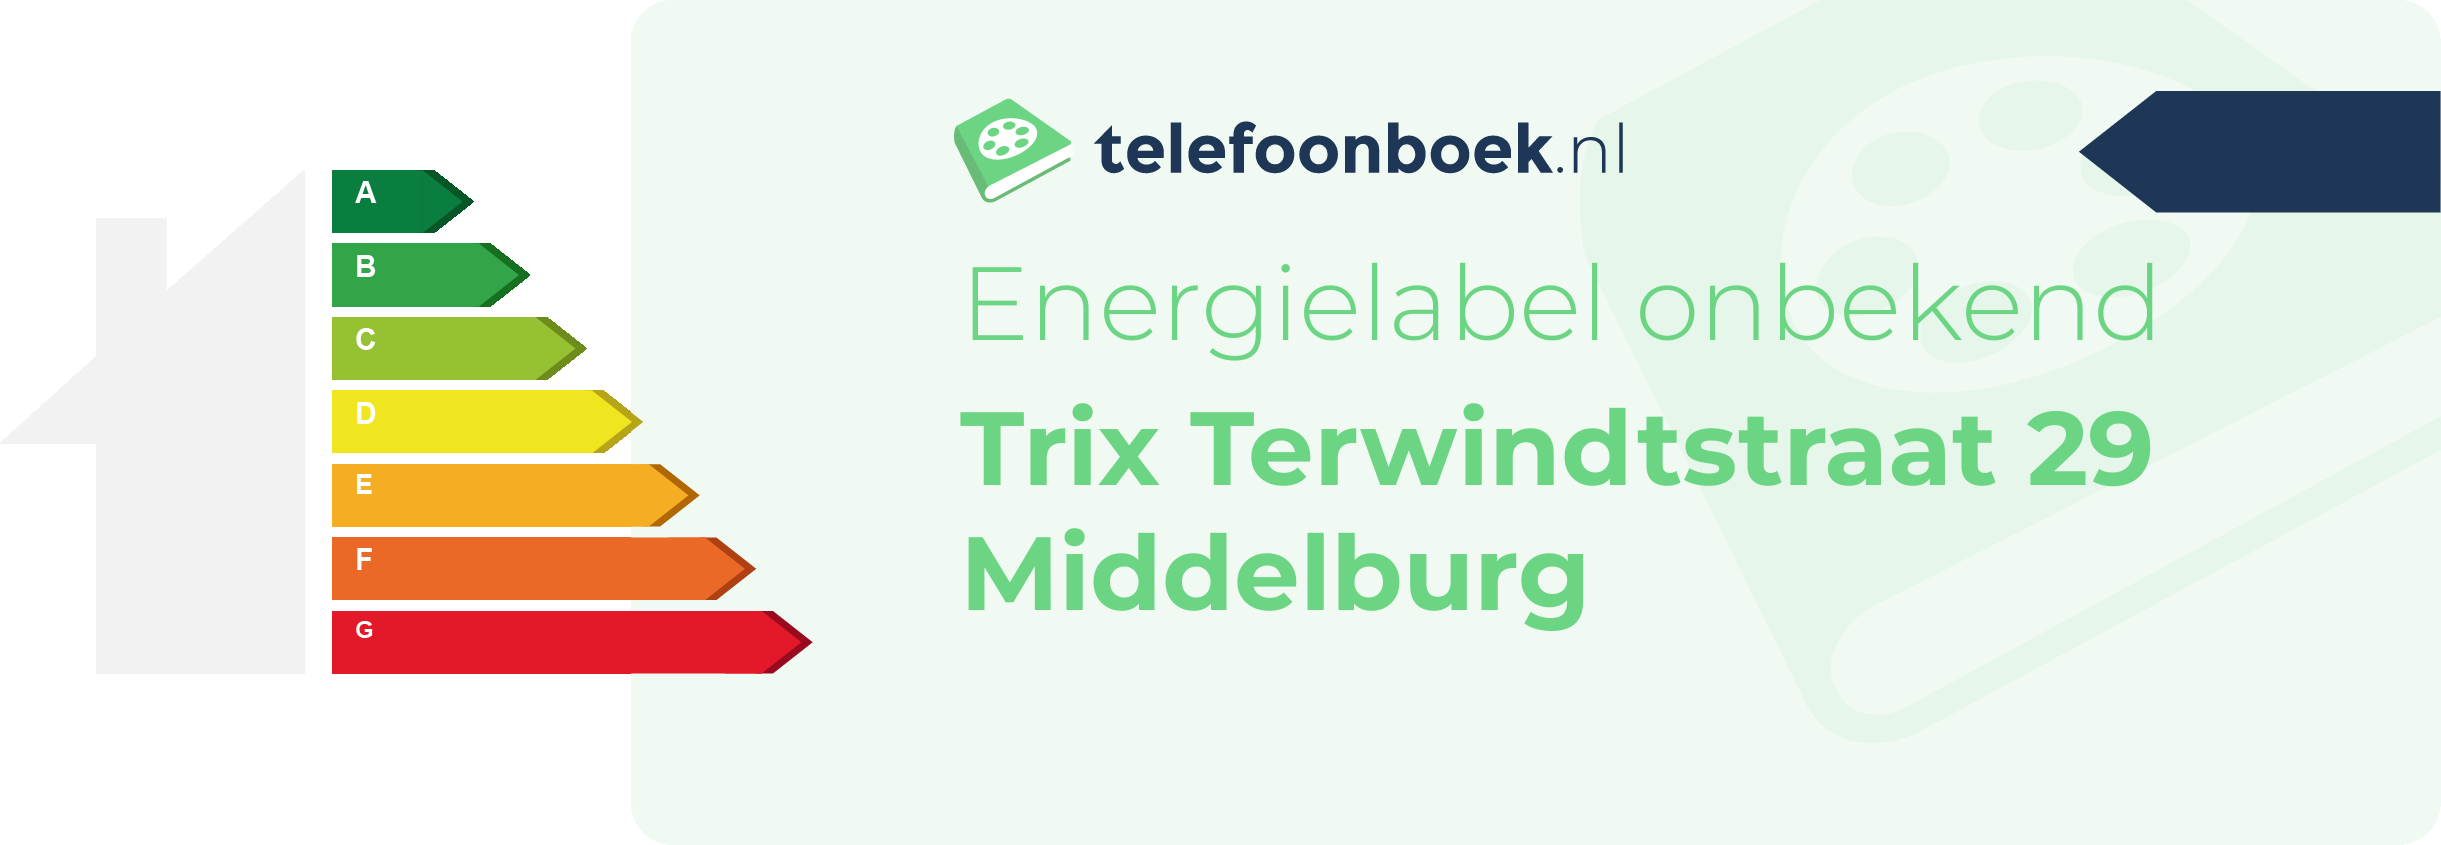 Energielabel Trix Terwindtstraat 29 Middelburg